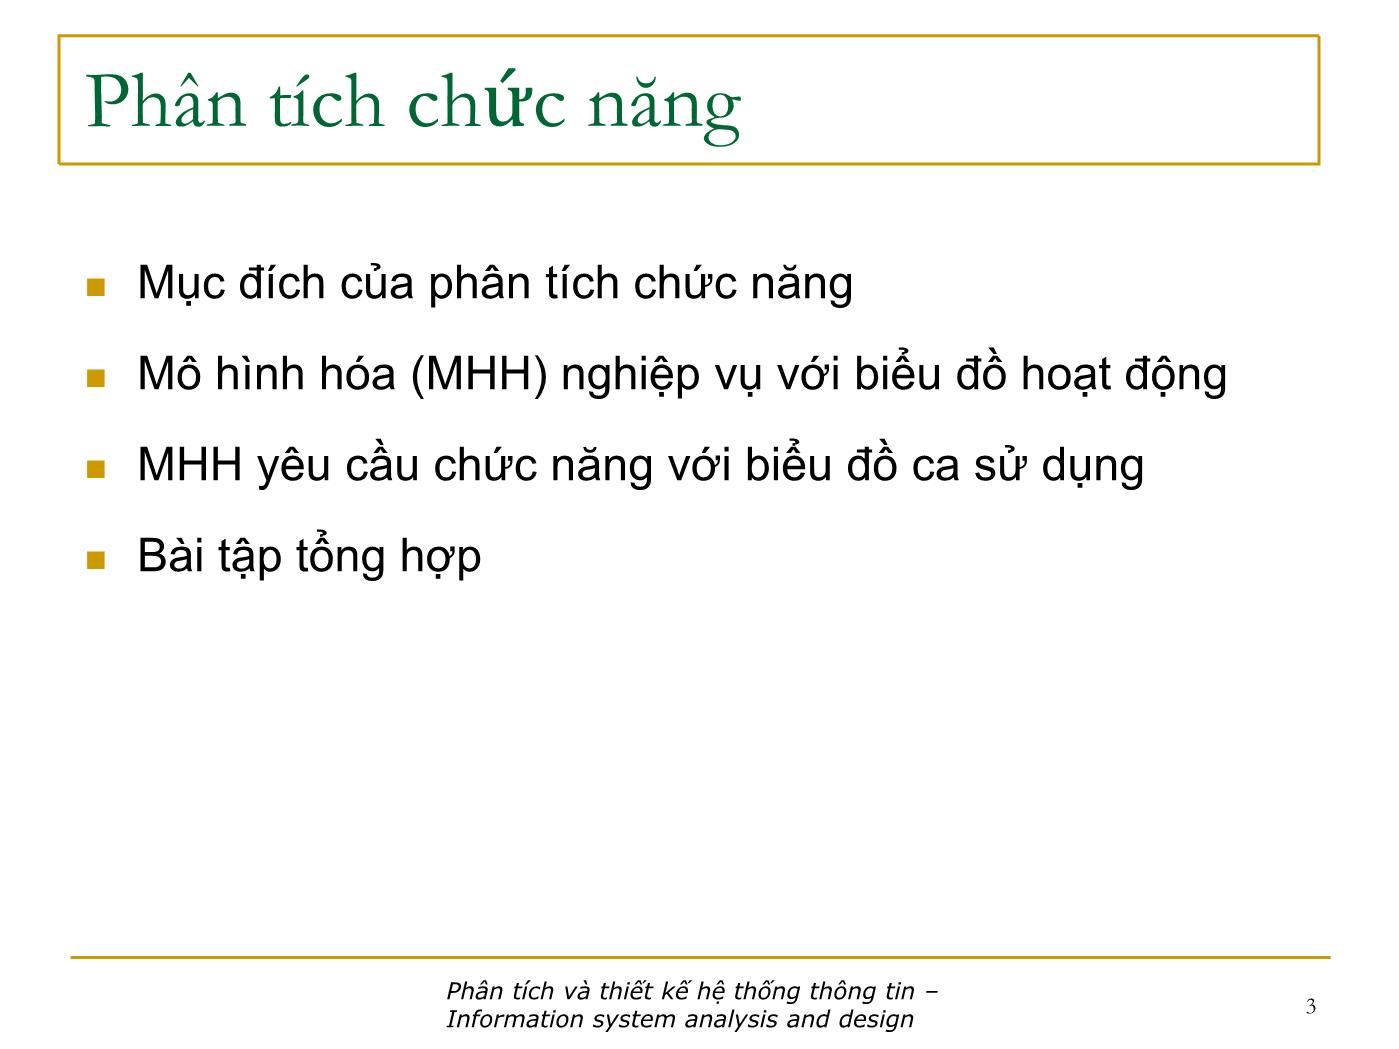 Bài giảng Phân tích và thiết kế hệ thống thông tin - Bài: Phân tích chức năng - Nguyễn Nhật Quang trang 3